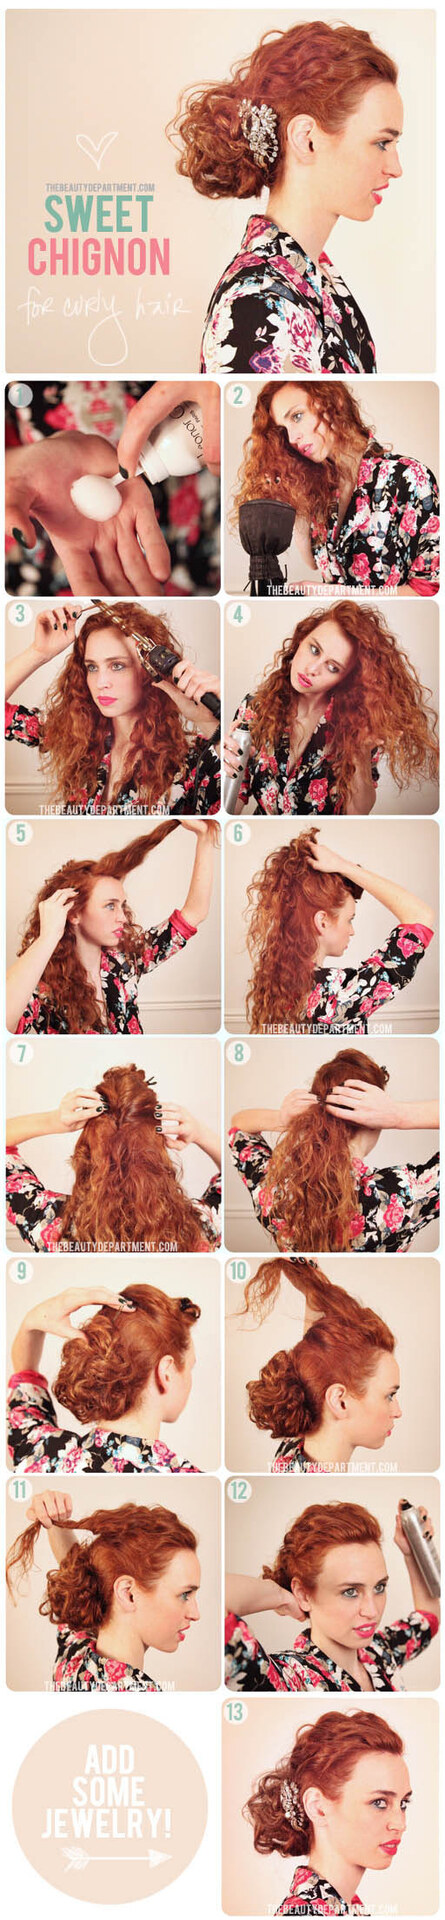 Penteados para cabelos cacheados: 10 inspirações imperdíveis